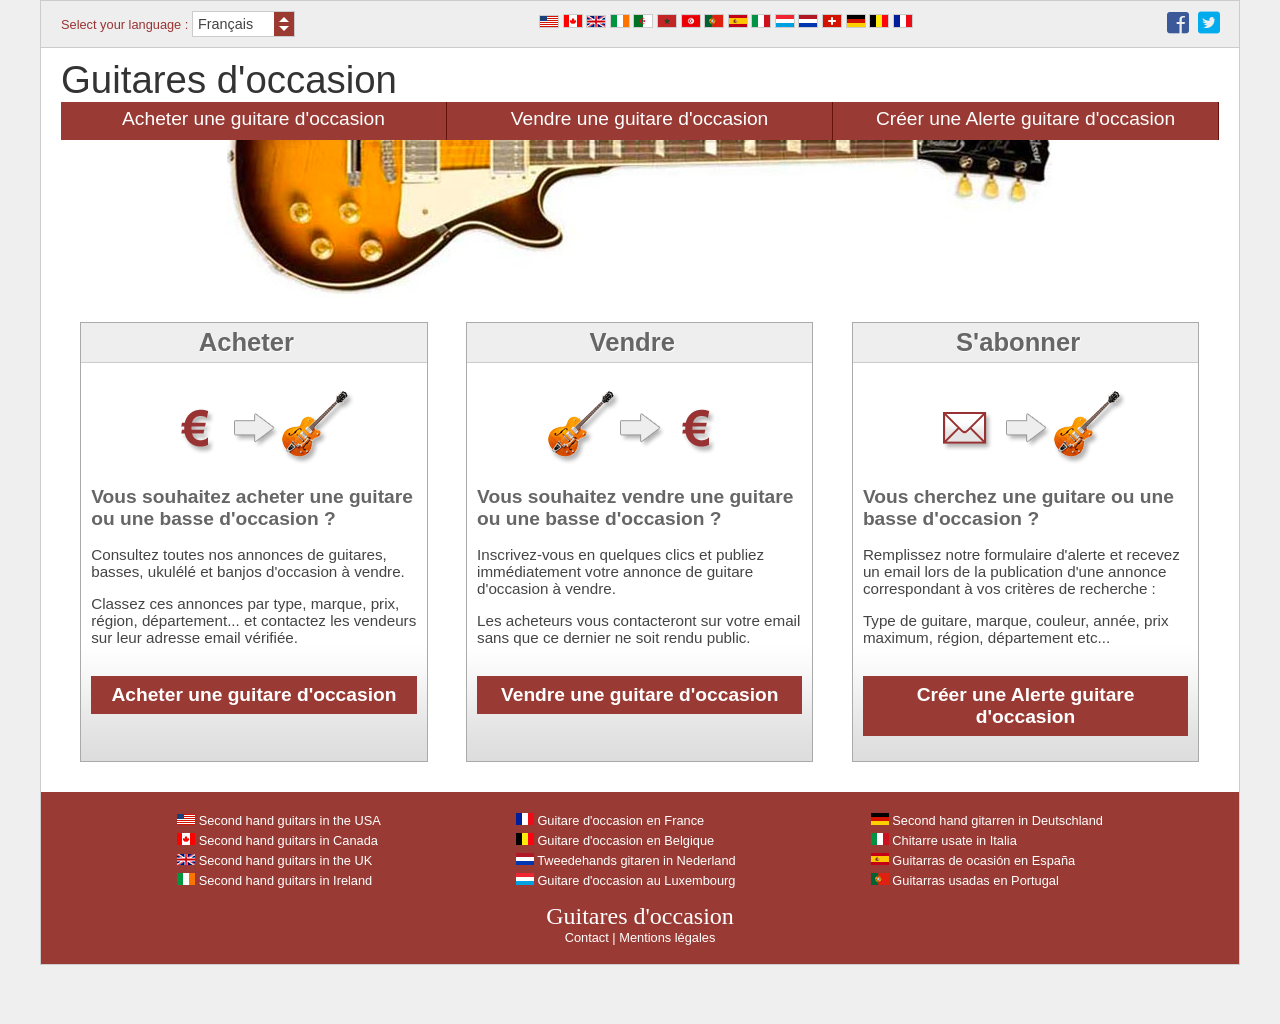 www.guitares-occasion.com